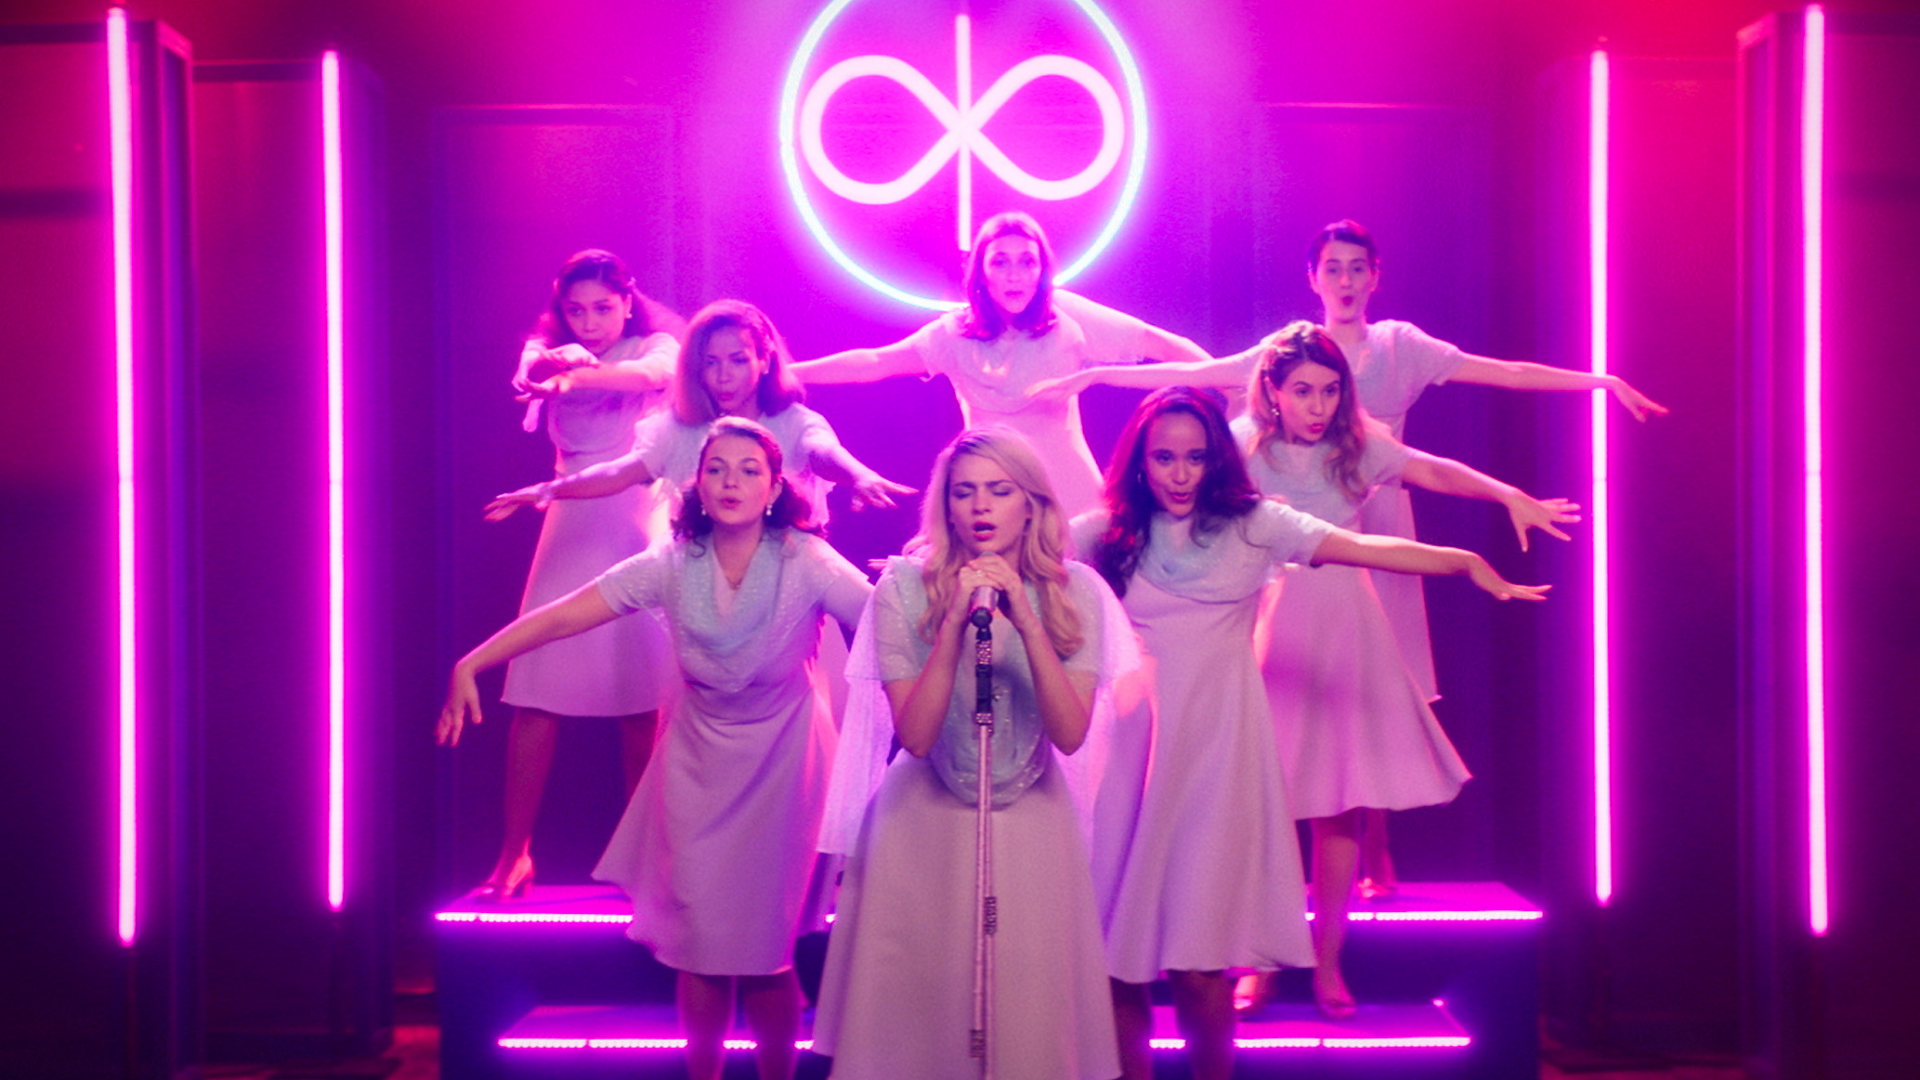 Cena do filme Medusa. 8 mulheres estão em cima de um palco rosa neon com vestidos brancos. A da frente, loira, está cantando no microfone. As outras coreografam ao fundo.